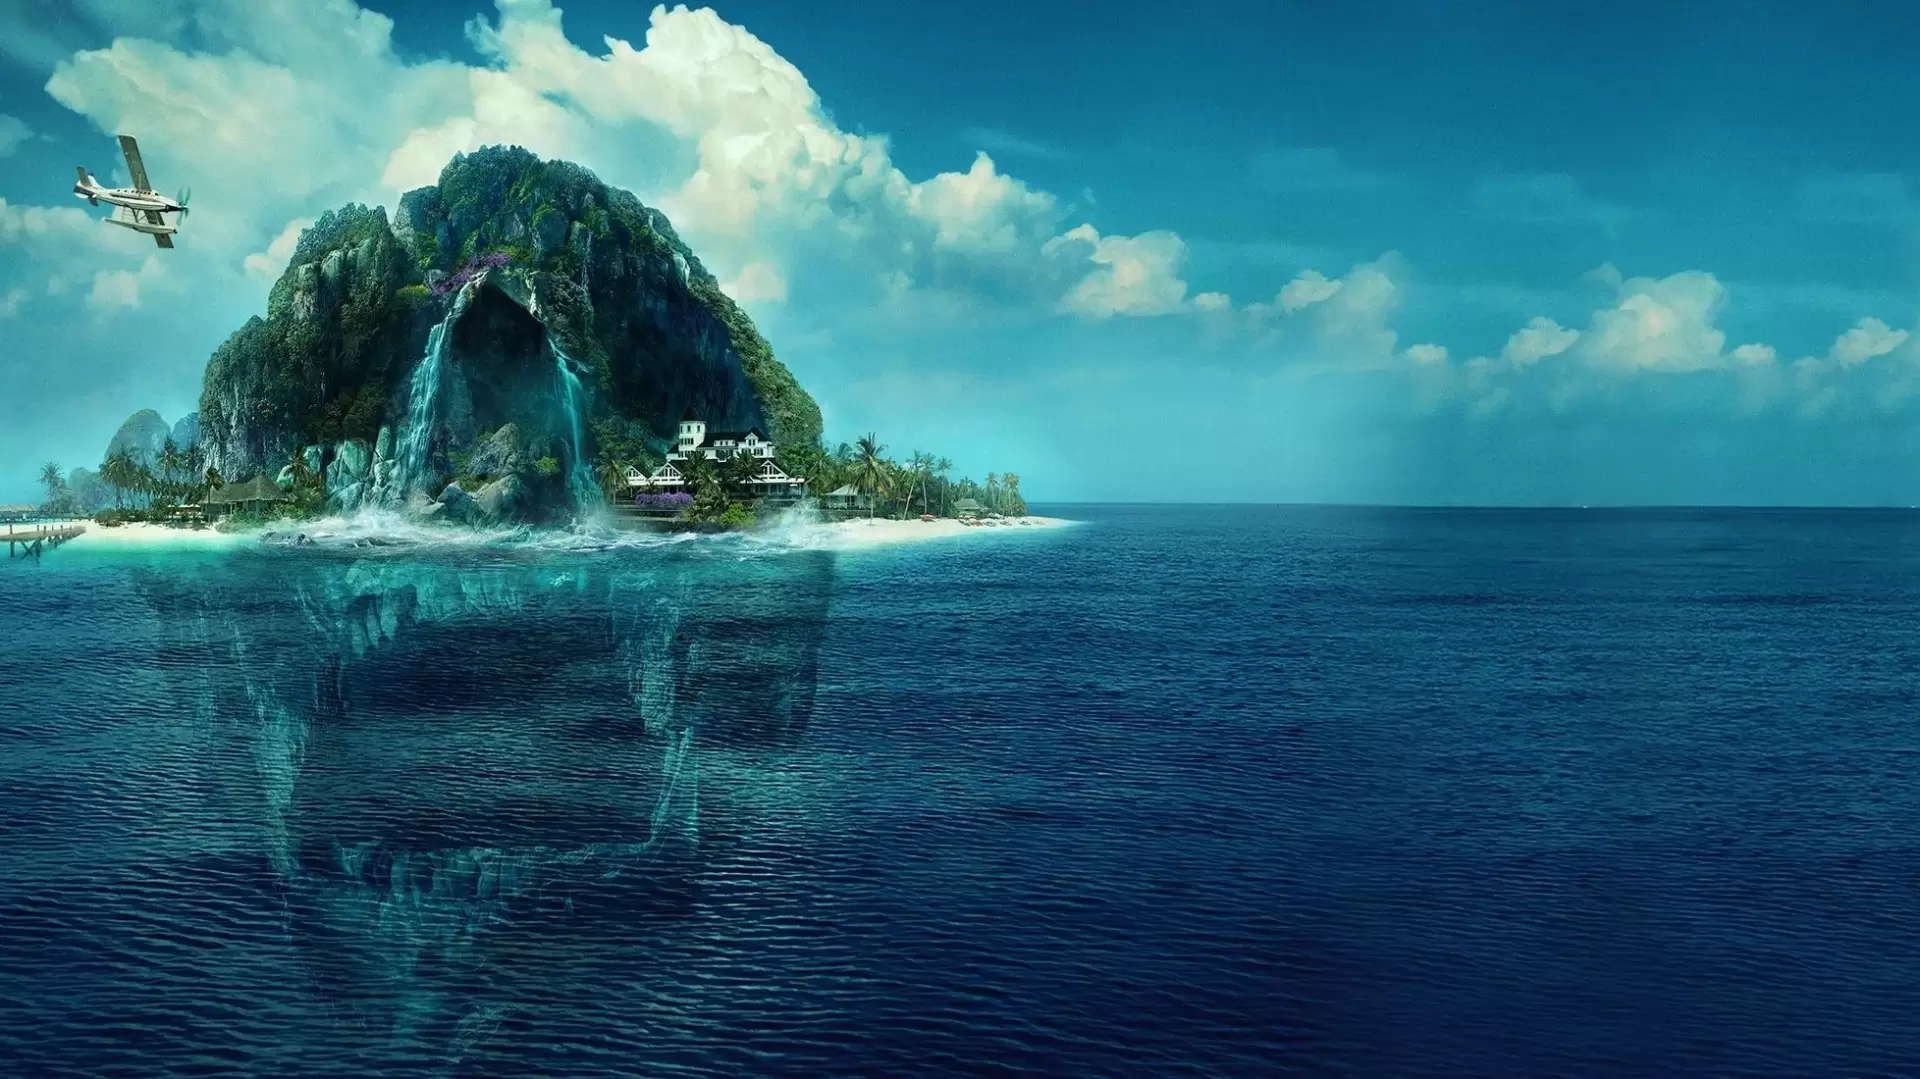 دانلود فیلم Fantasy Island 2020 (جزیره فانتزی) با زیرنویس فارسی و تماشای آنلاین